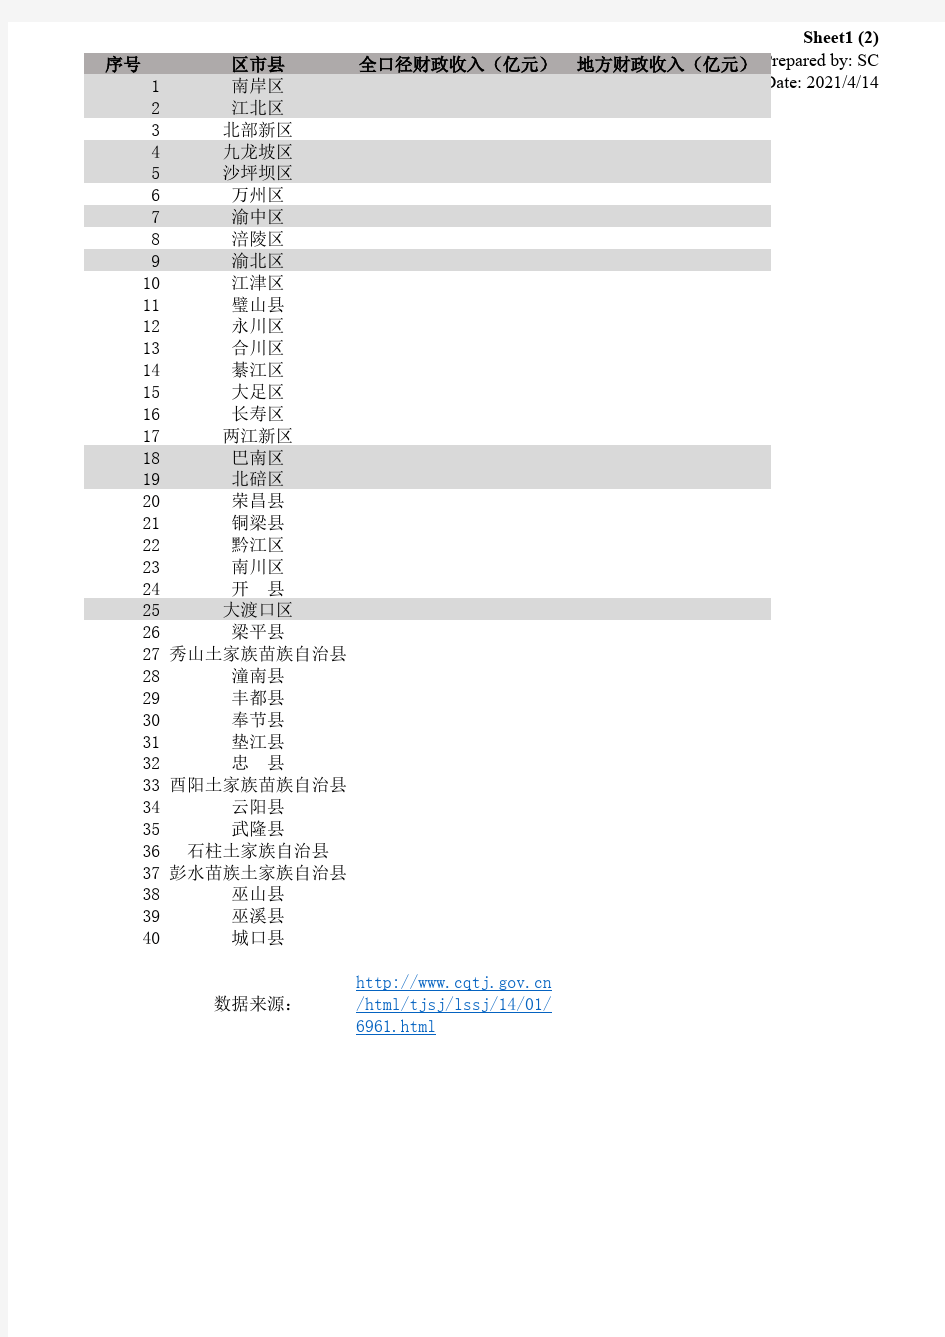 重庆市各区市县2013年统计公报摘要-2